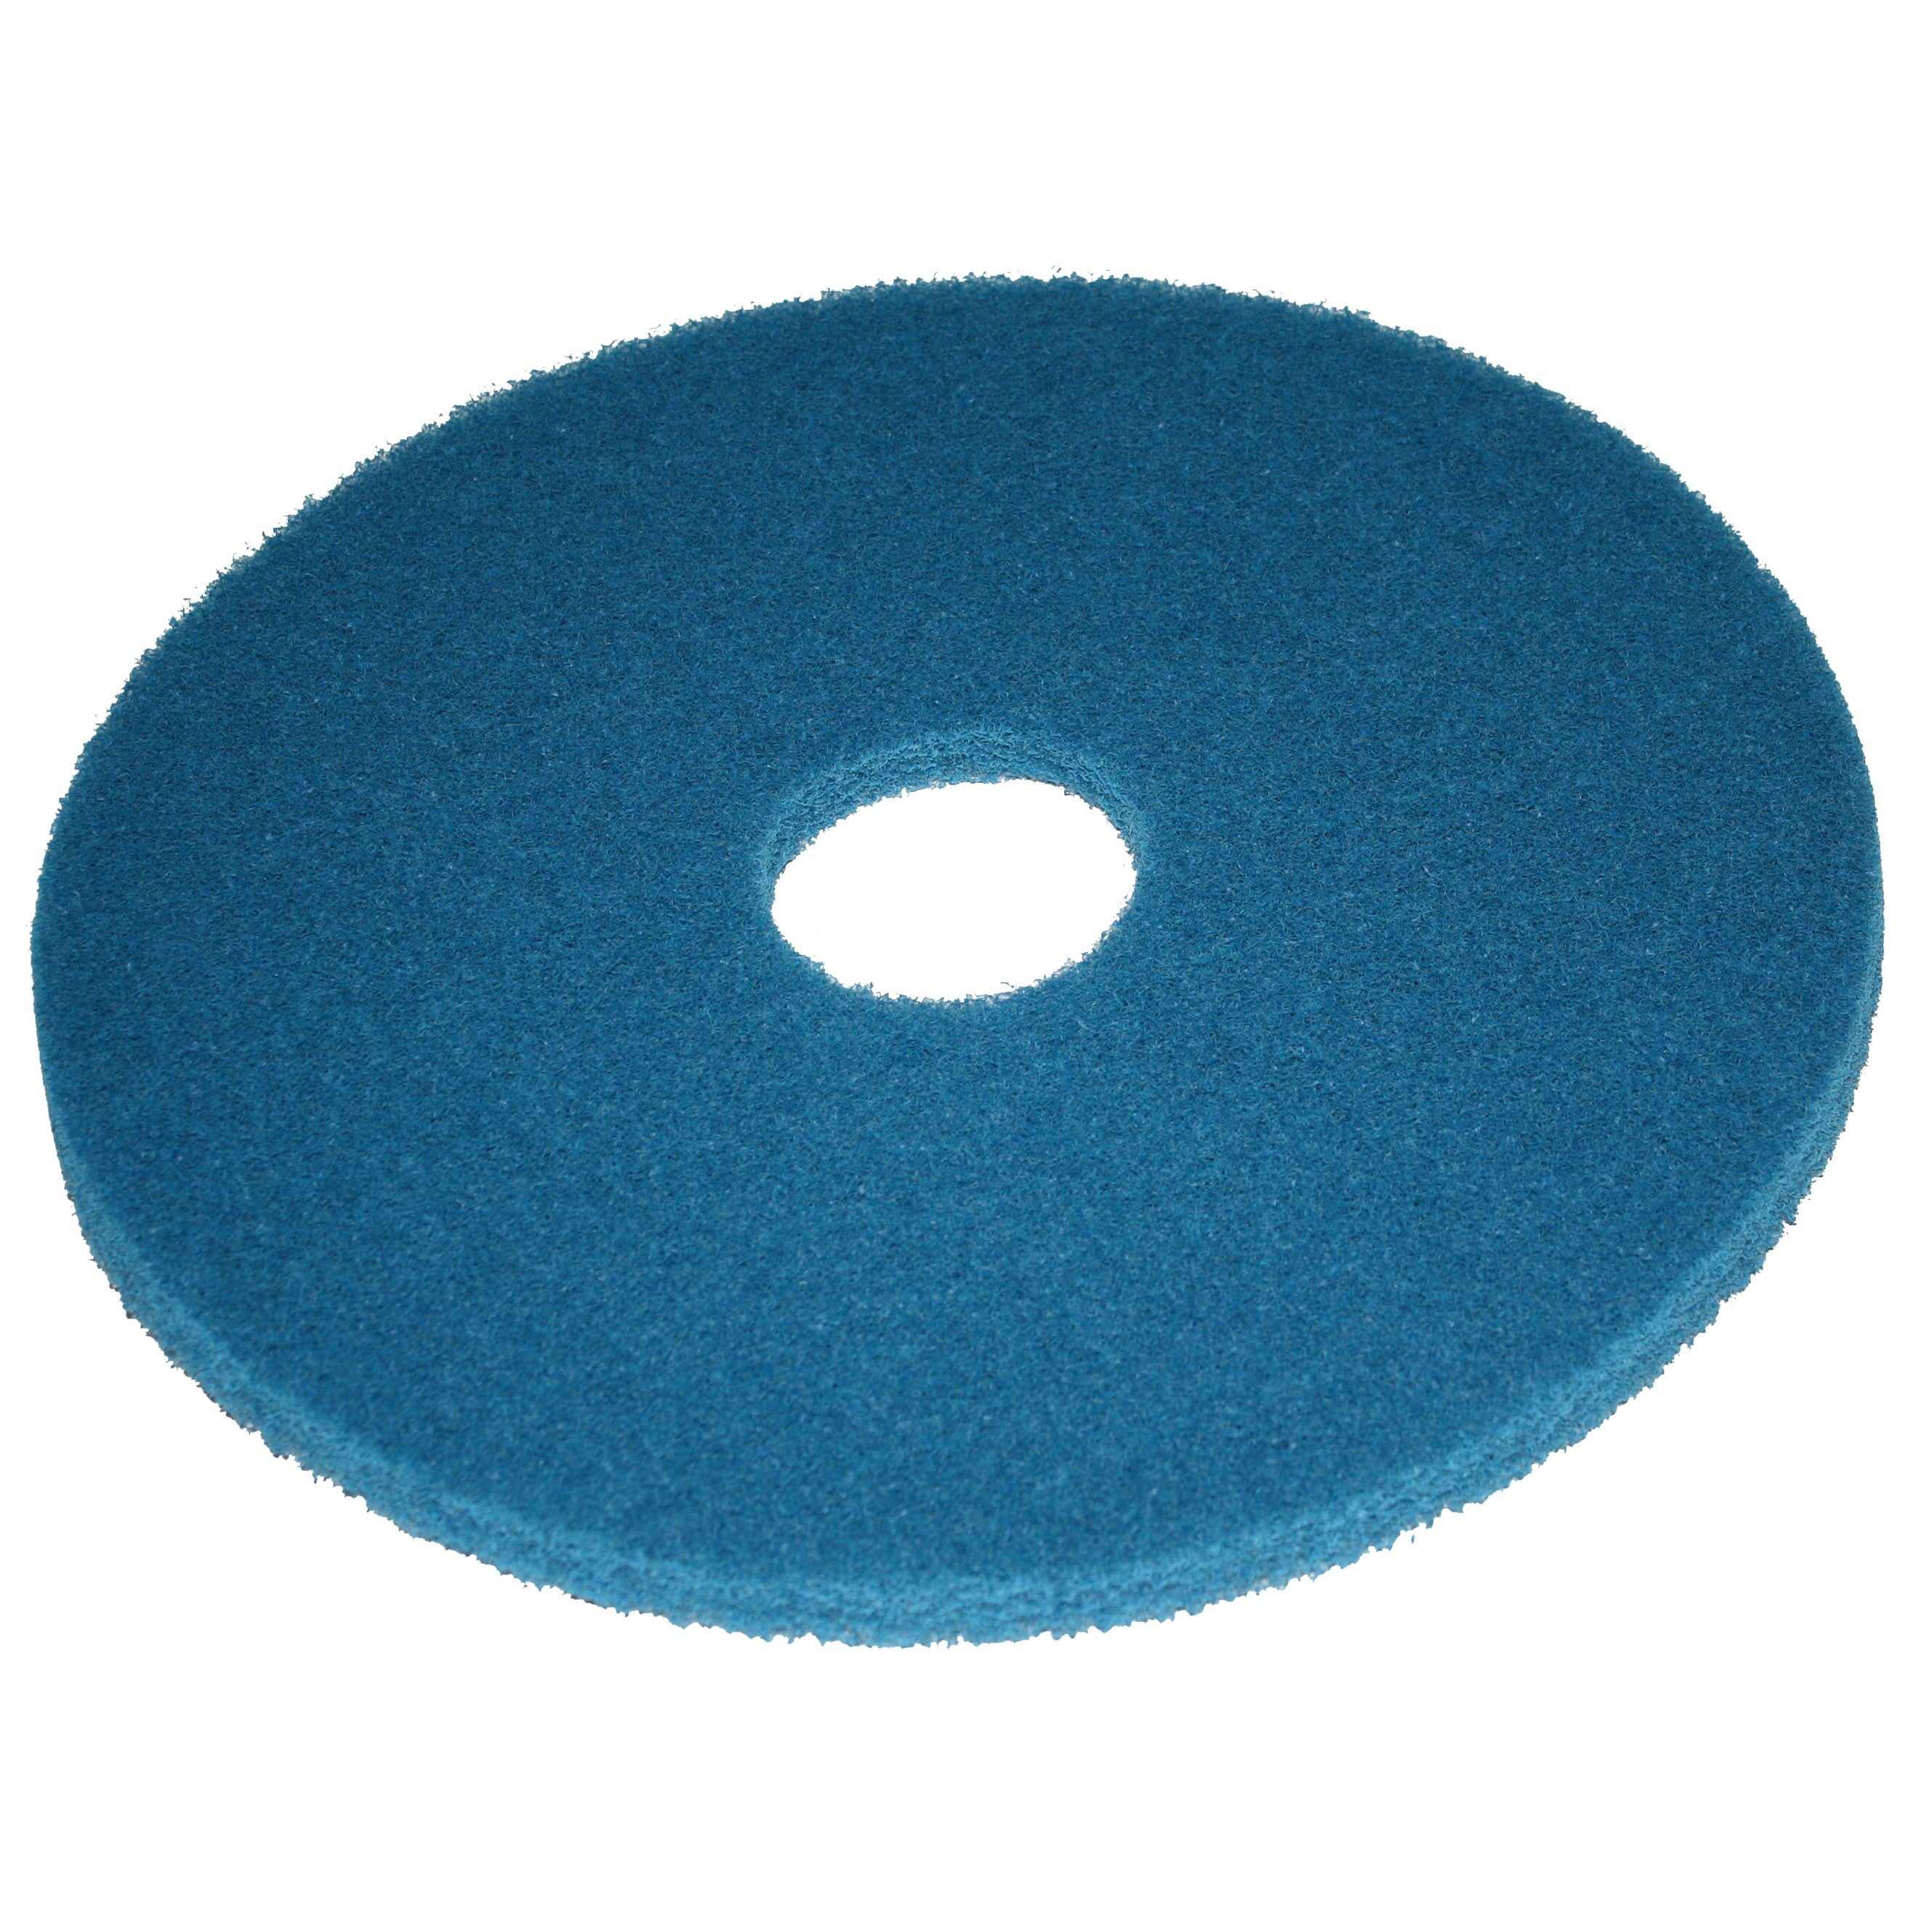 Pad bleu, Ø 508 mm, polyester